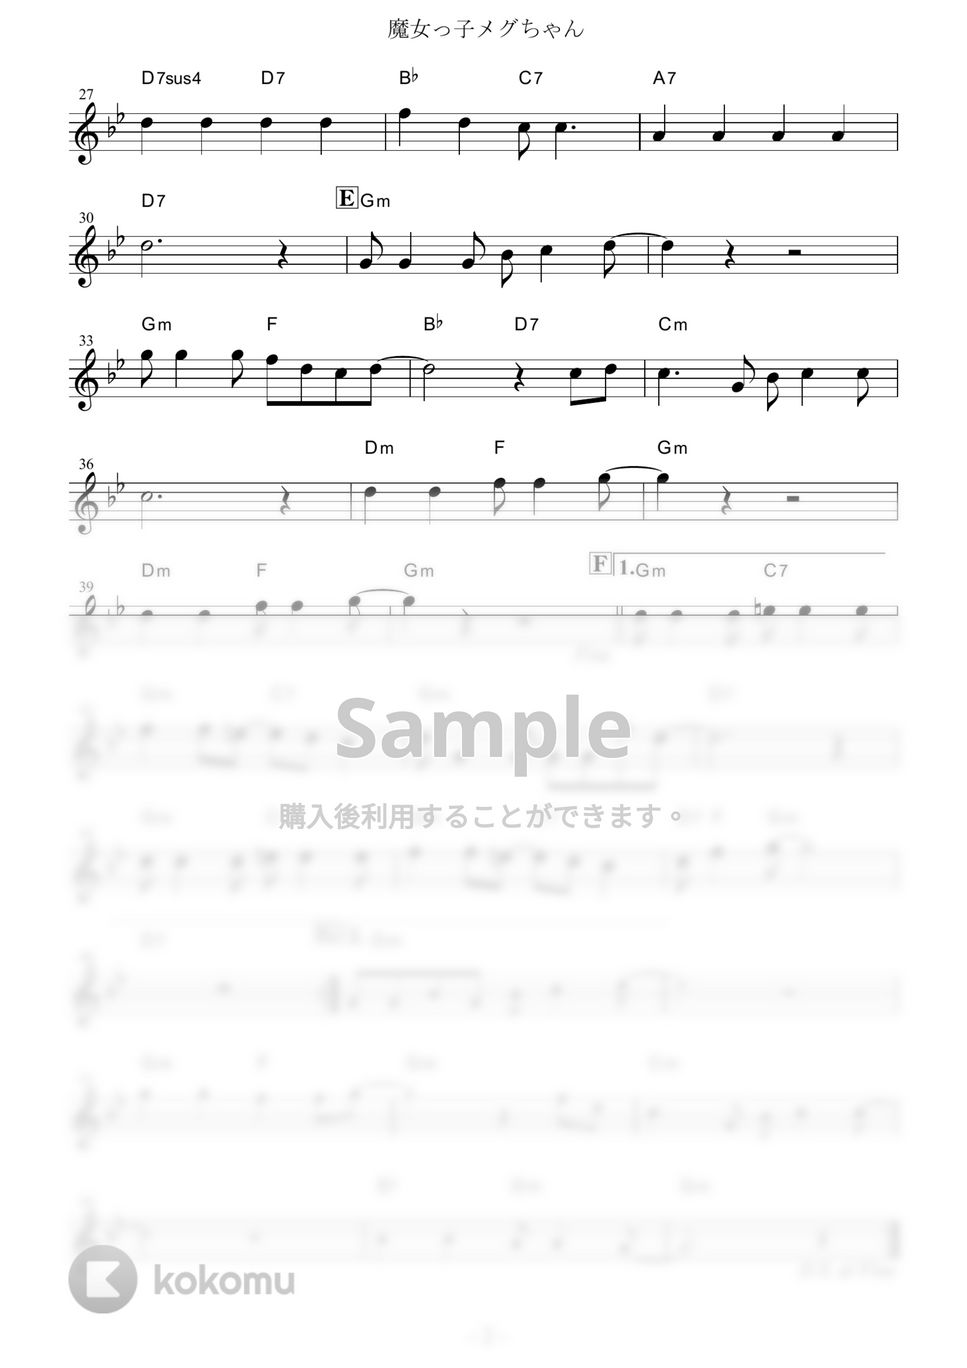 前川陽子 - 魔女っ子メグちゃん (『魔女っ子メグちゃん』 / in Eb) by muta-sax